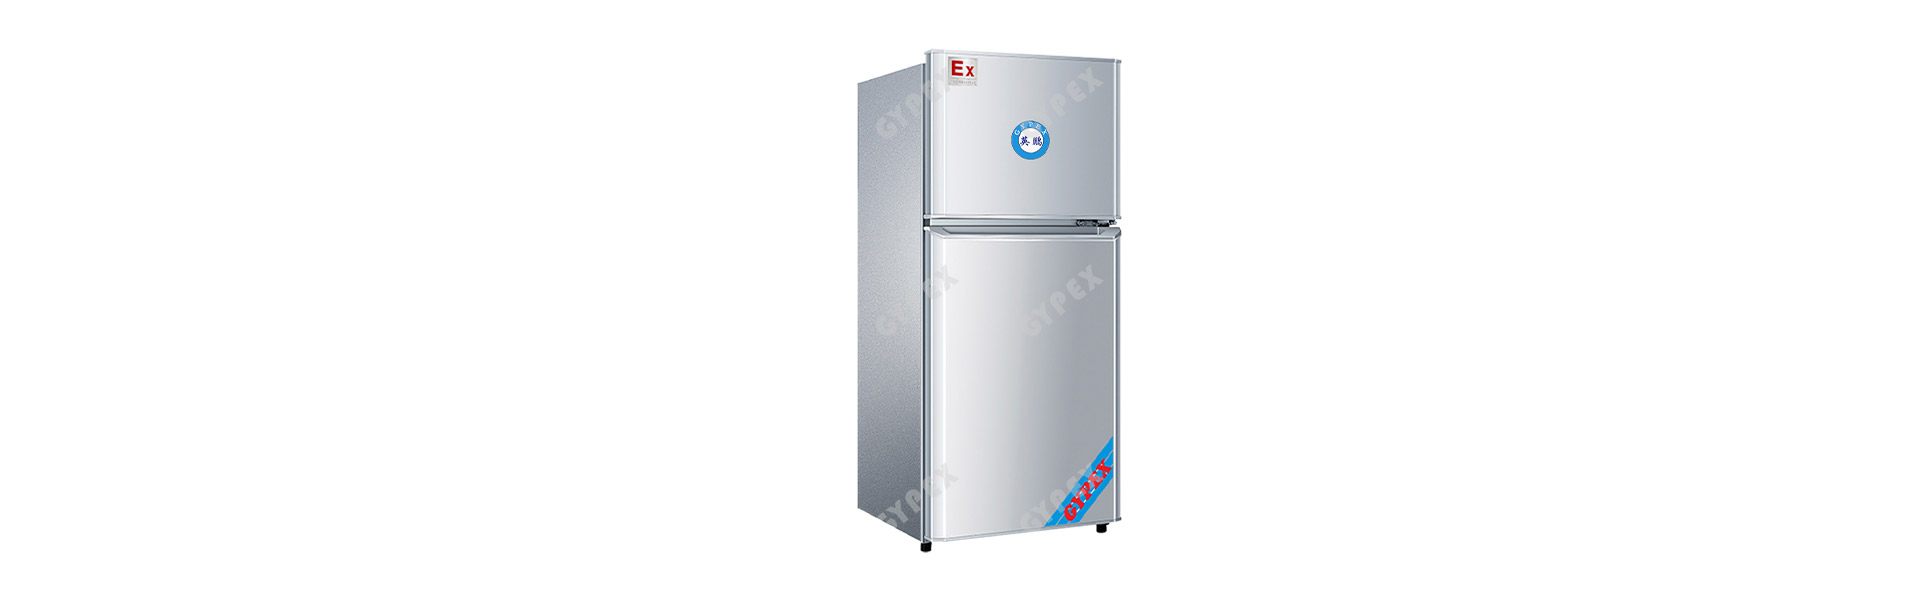 防爆冰箱与普通冰箱有什么区别-3.jpg